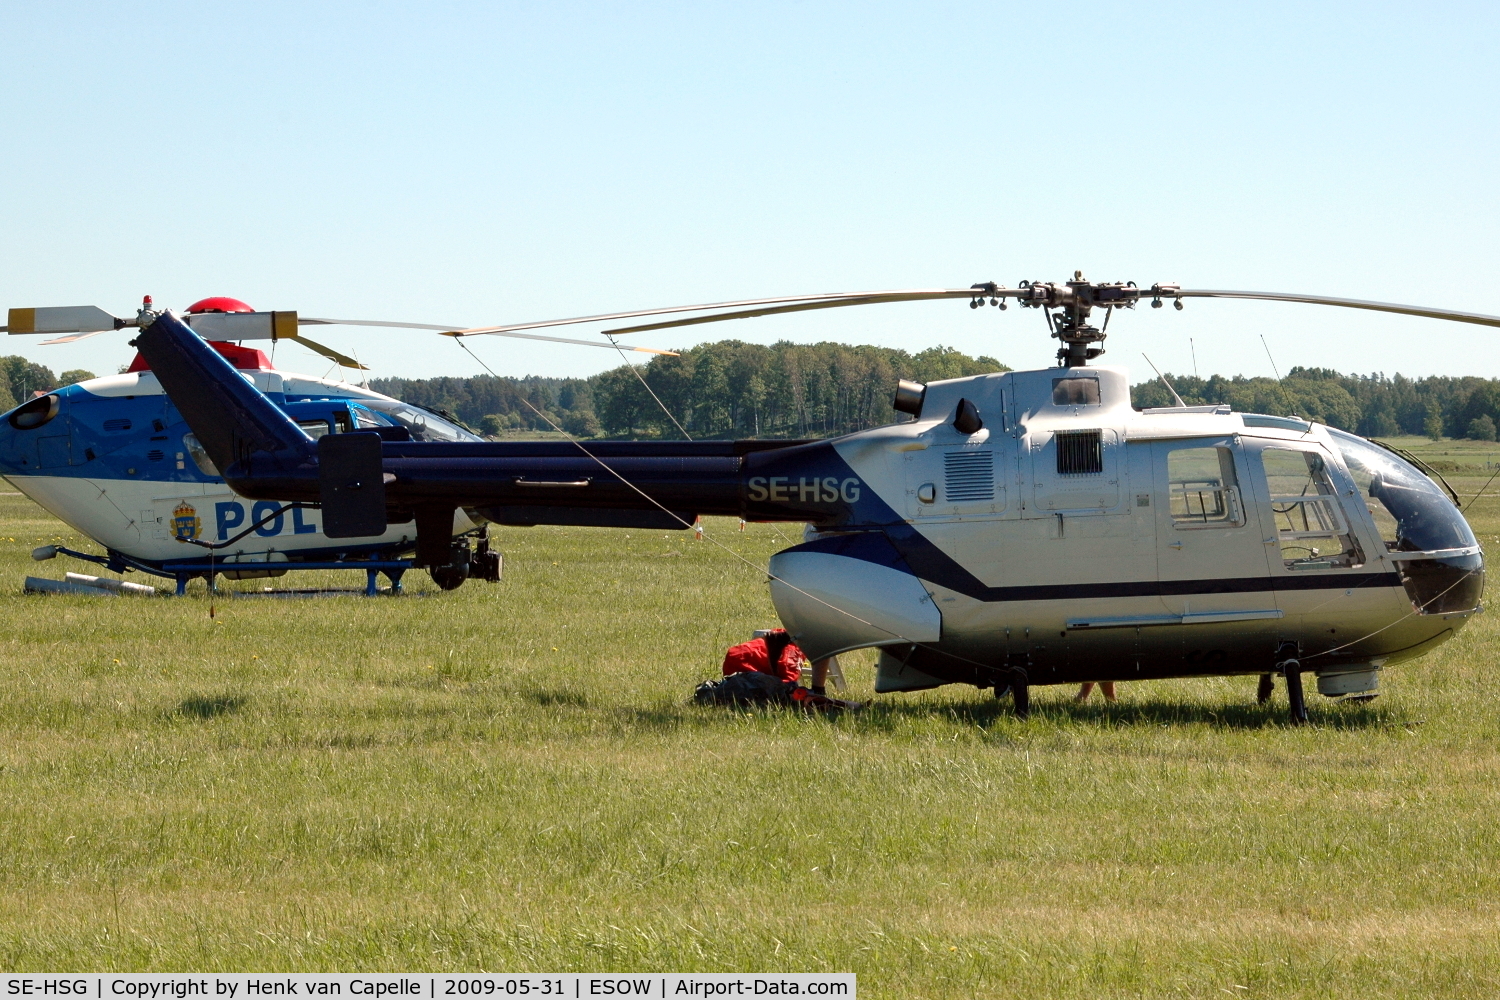 SE-HSG, 1980 MBB Bo-105CB C/N S-439, Bo105CB helicopter at Västerås Hässlö airport, Sweden.